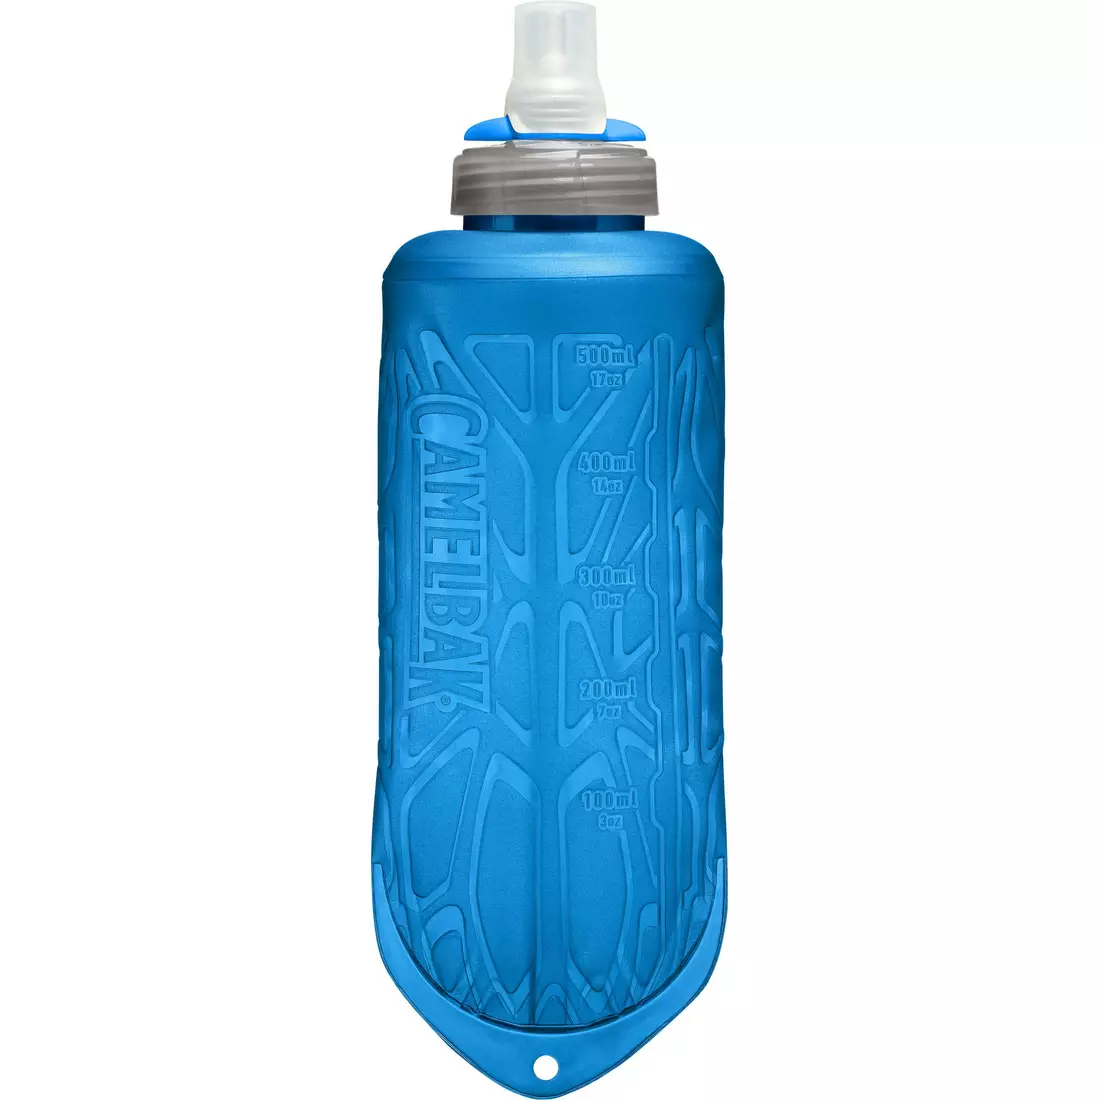 Camelbak rucsac / vestă de alergare cu sticle de apă Ultra Pro Vest 1L Quick Stow Flask Black/Atomic Blue